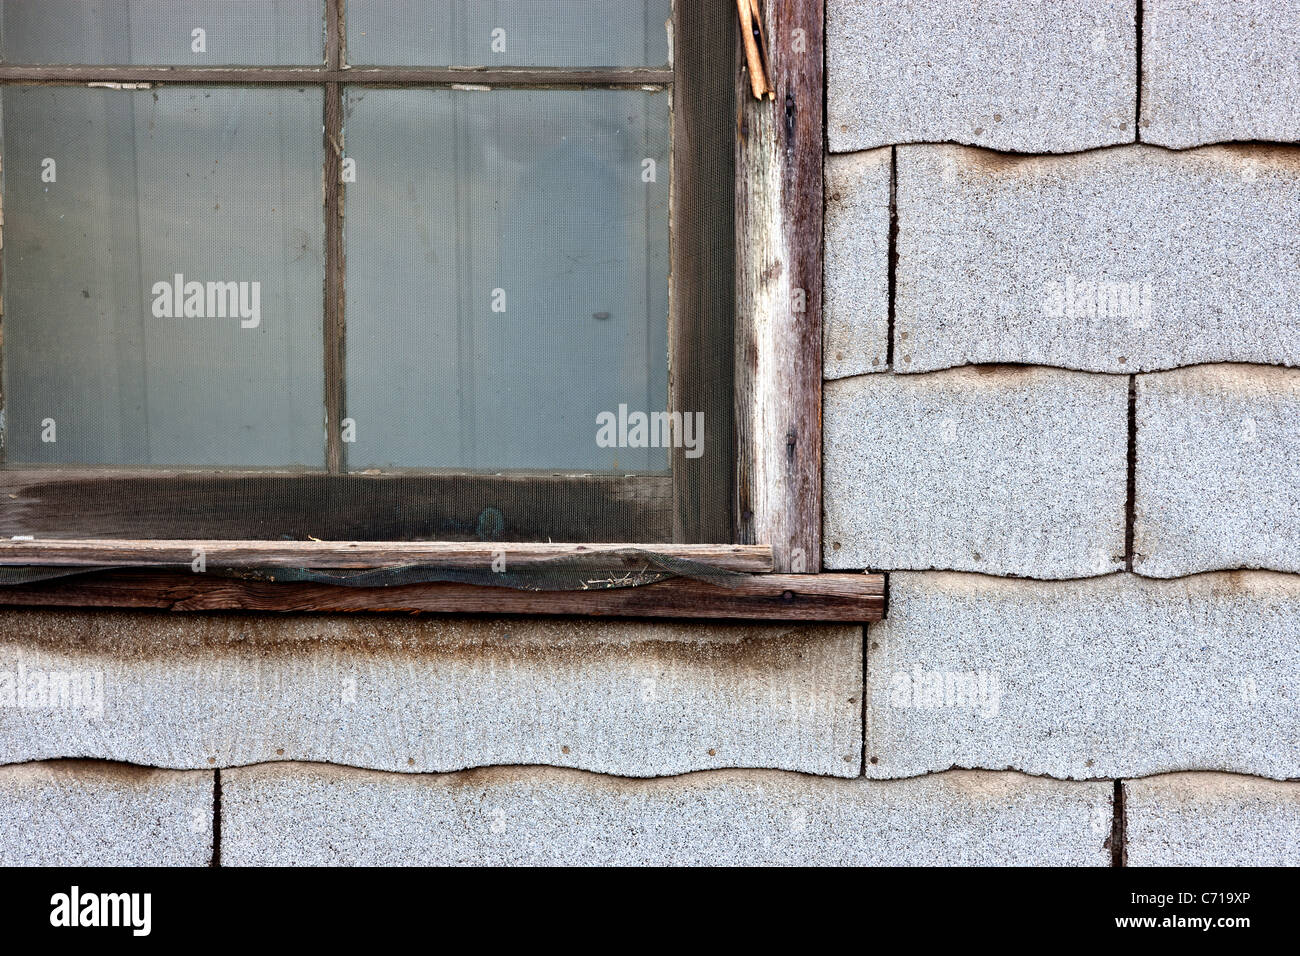 Asbestos composition shingles, exterior wall Stock Photo